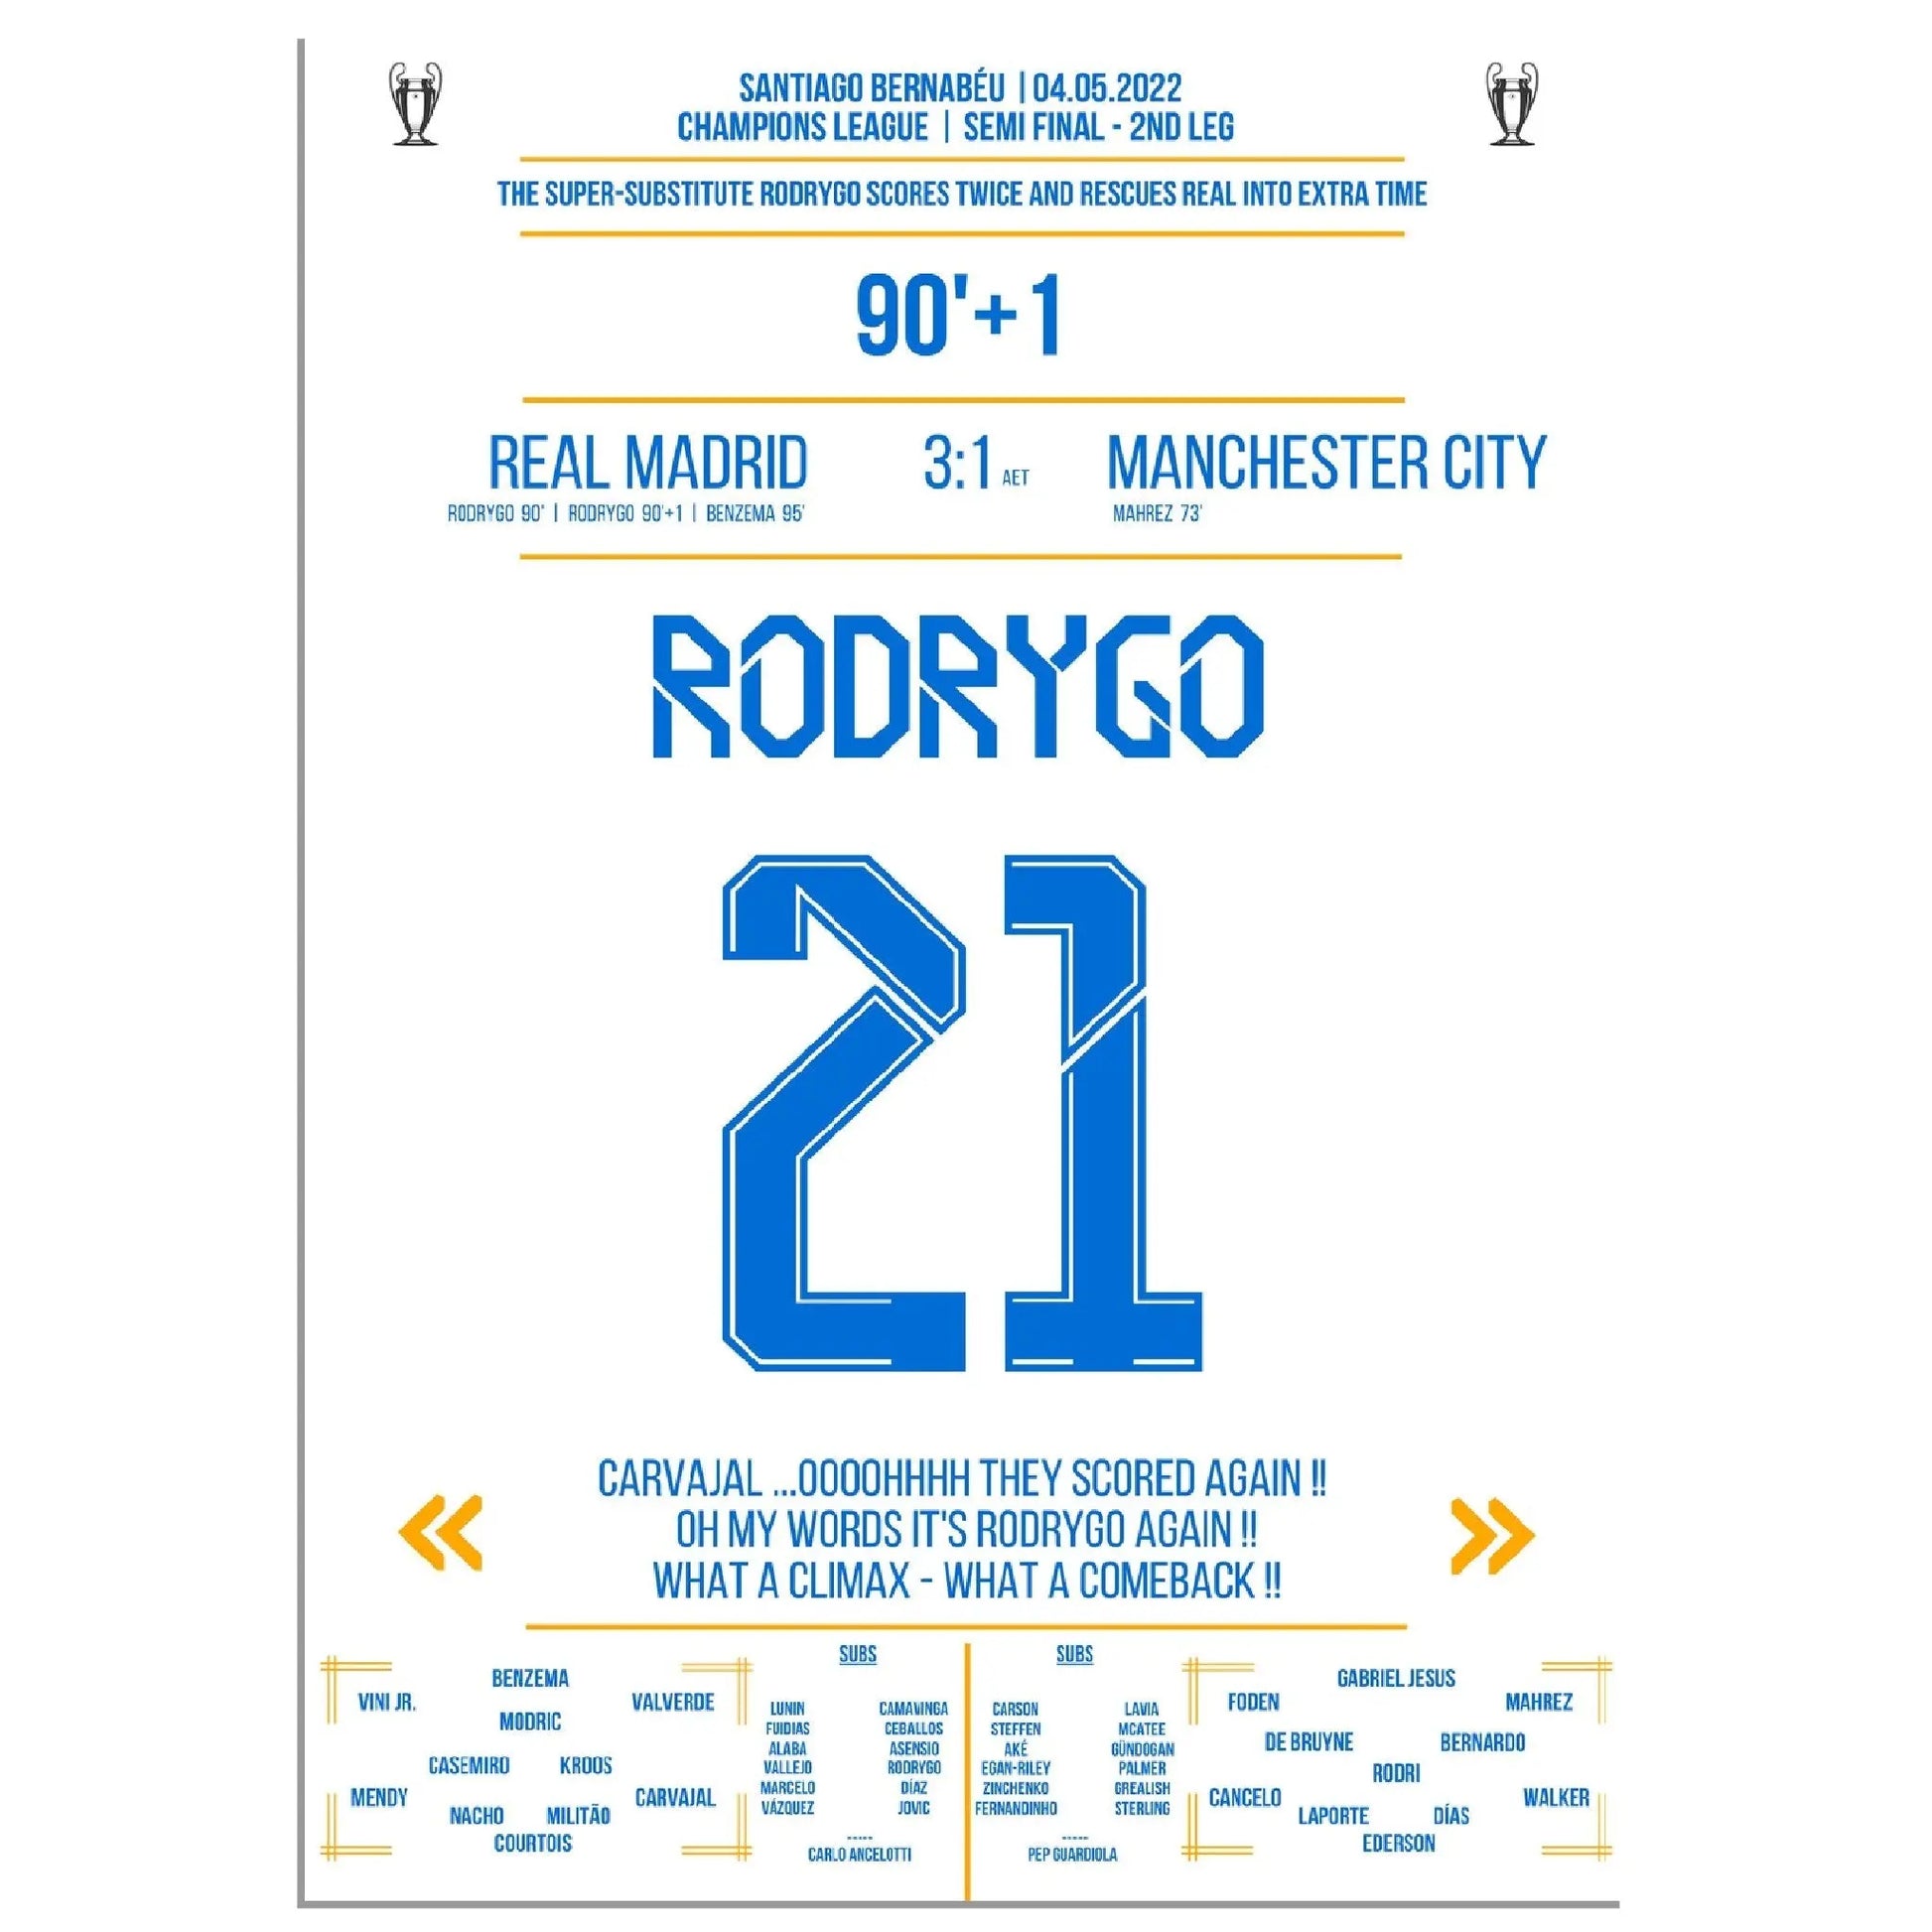 Rodrygo rettet Real in die Verlängerung auf dem Weg ins Champions League Finale 2022 